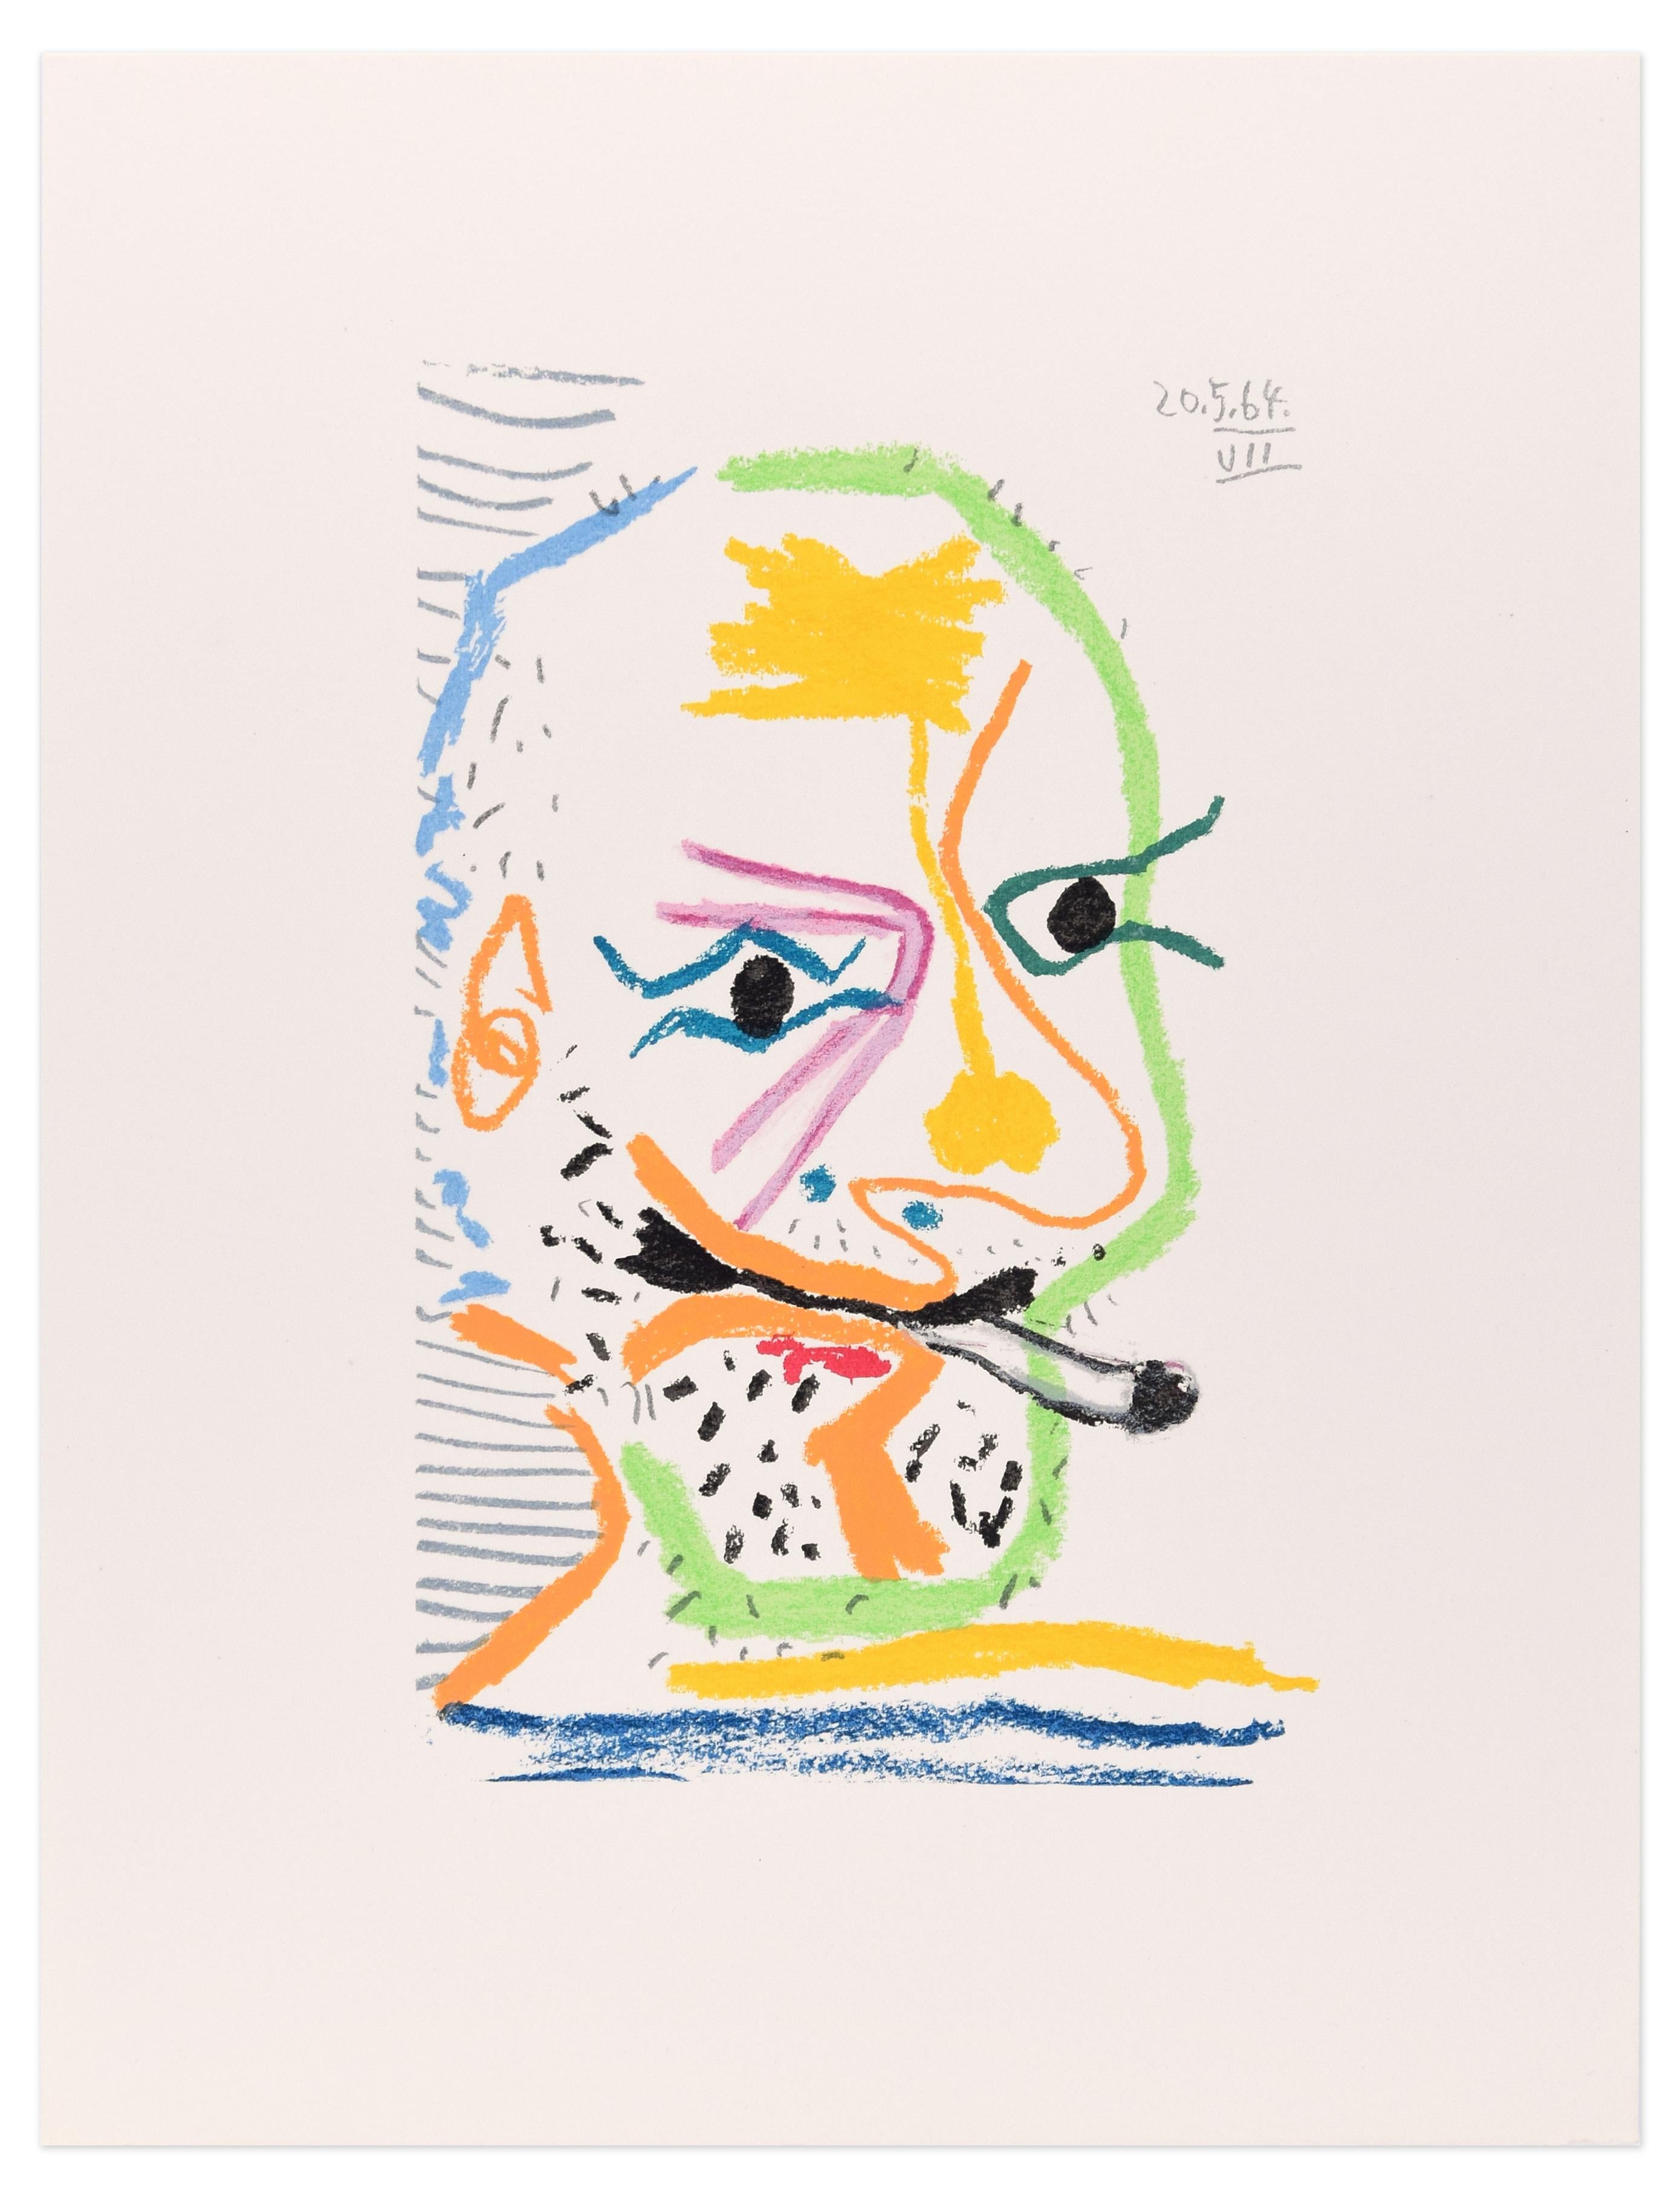 (after) Pablo Picasso Print - Le goût du Bonheur - 20.5.64 VII - Original Lithograph After P. Picasso